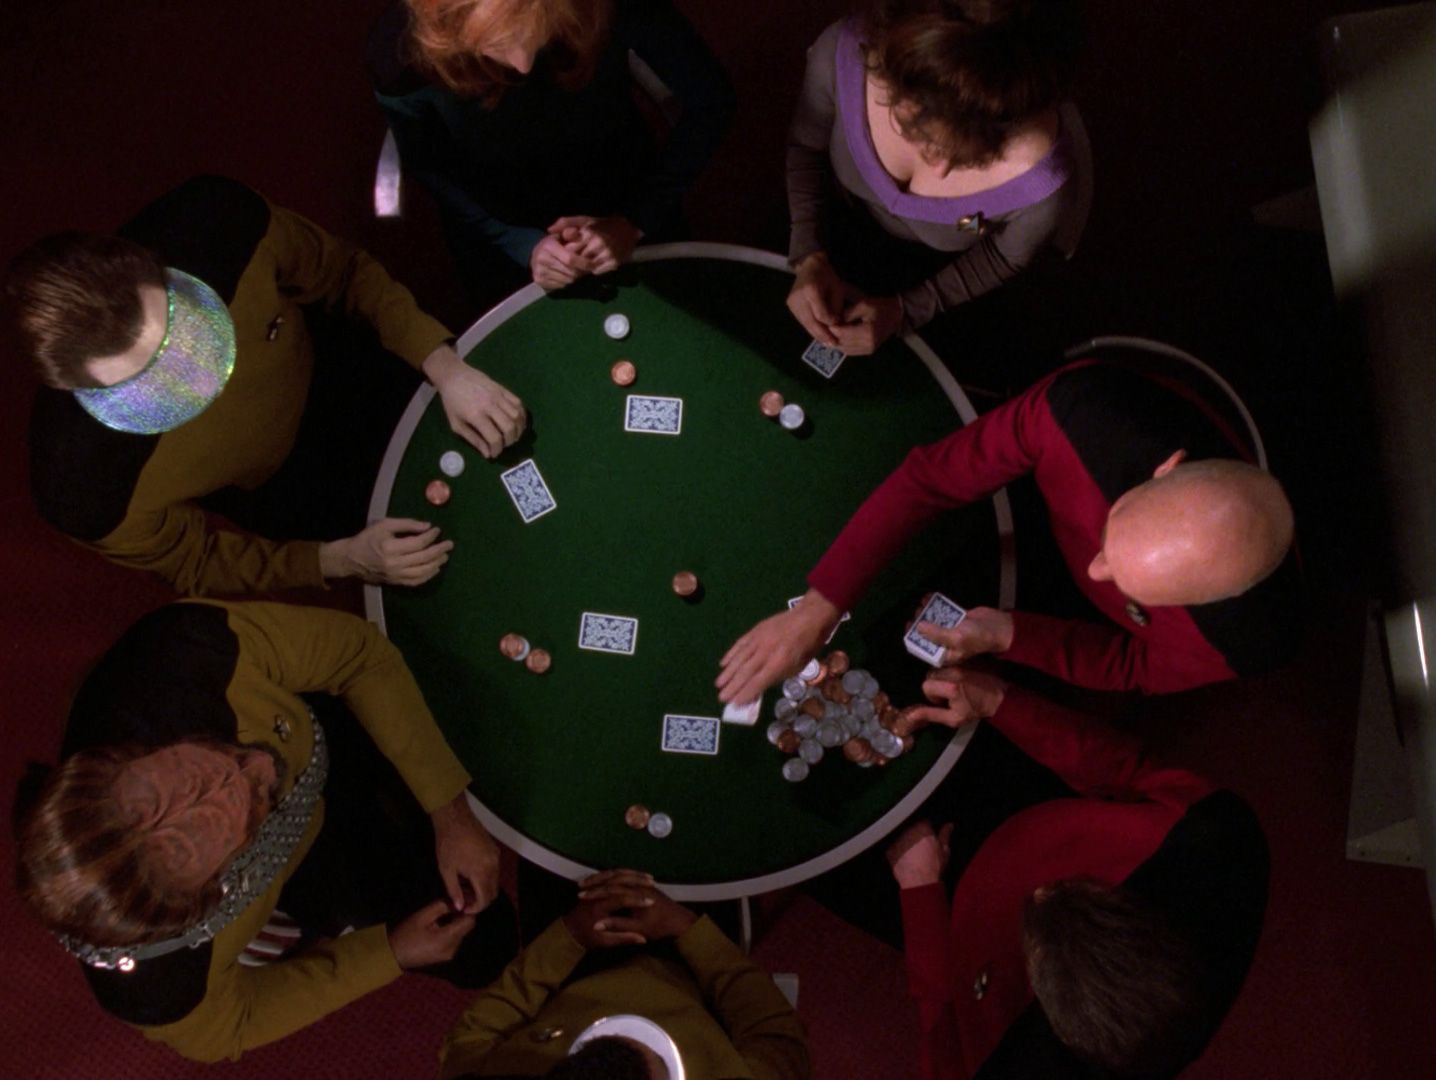 star-trek-tng-all-good-thingsPatrick Stewart dans le rôle de Jean Luc Picard, Marina Sirtis dans le rôle de Deanna Troi, Jonathan Frakes dans le rôle de Will Riker, Gates McFadden dans le rôle de Beverly Crusher, Michael Dorn dans le rôle de Worf, Brent Spiner dans le rôle de Data, et LeVar Burton dans le rôle de Geordi, tous assis autour d'une table de poker dans le final de Star Trek The Next Generation,  